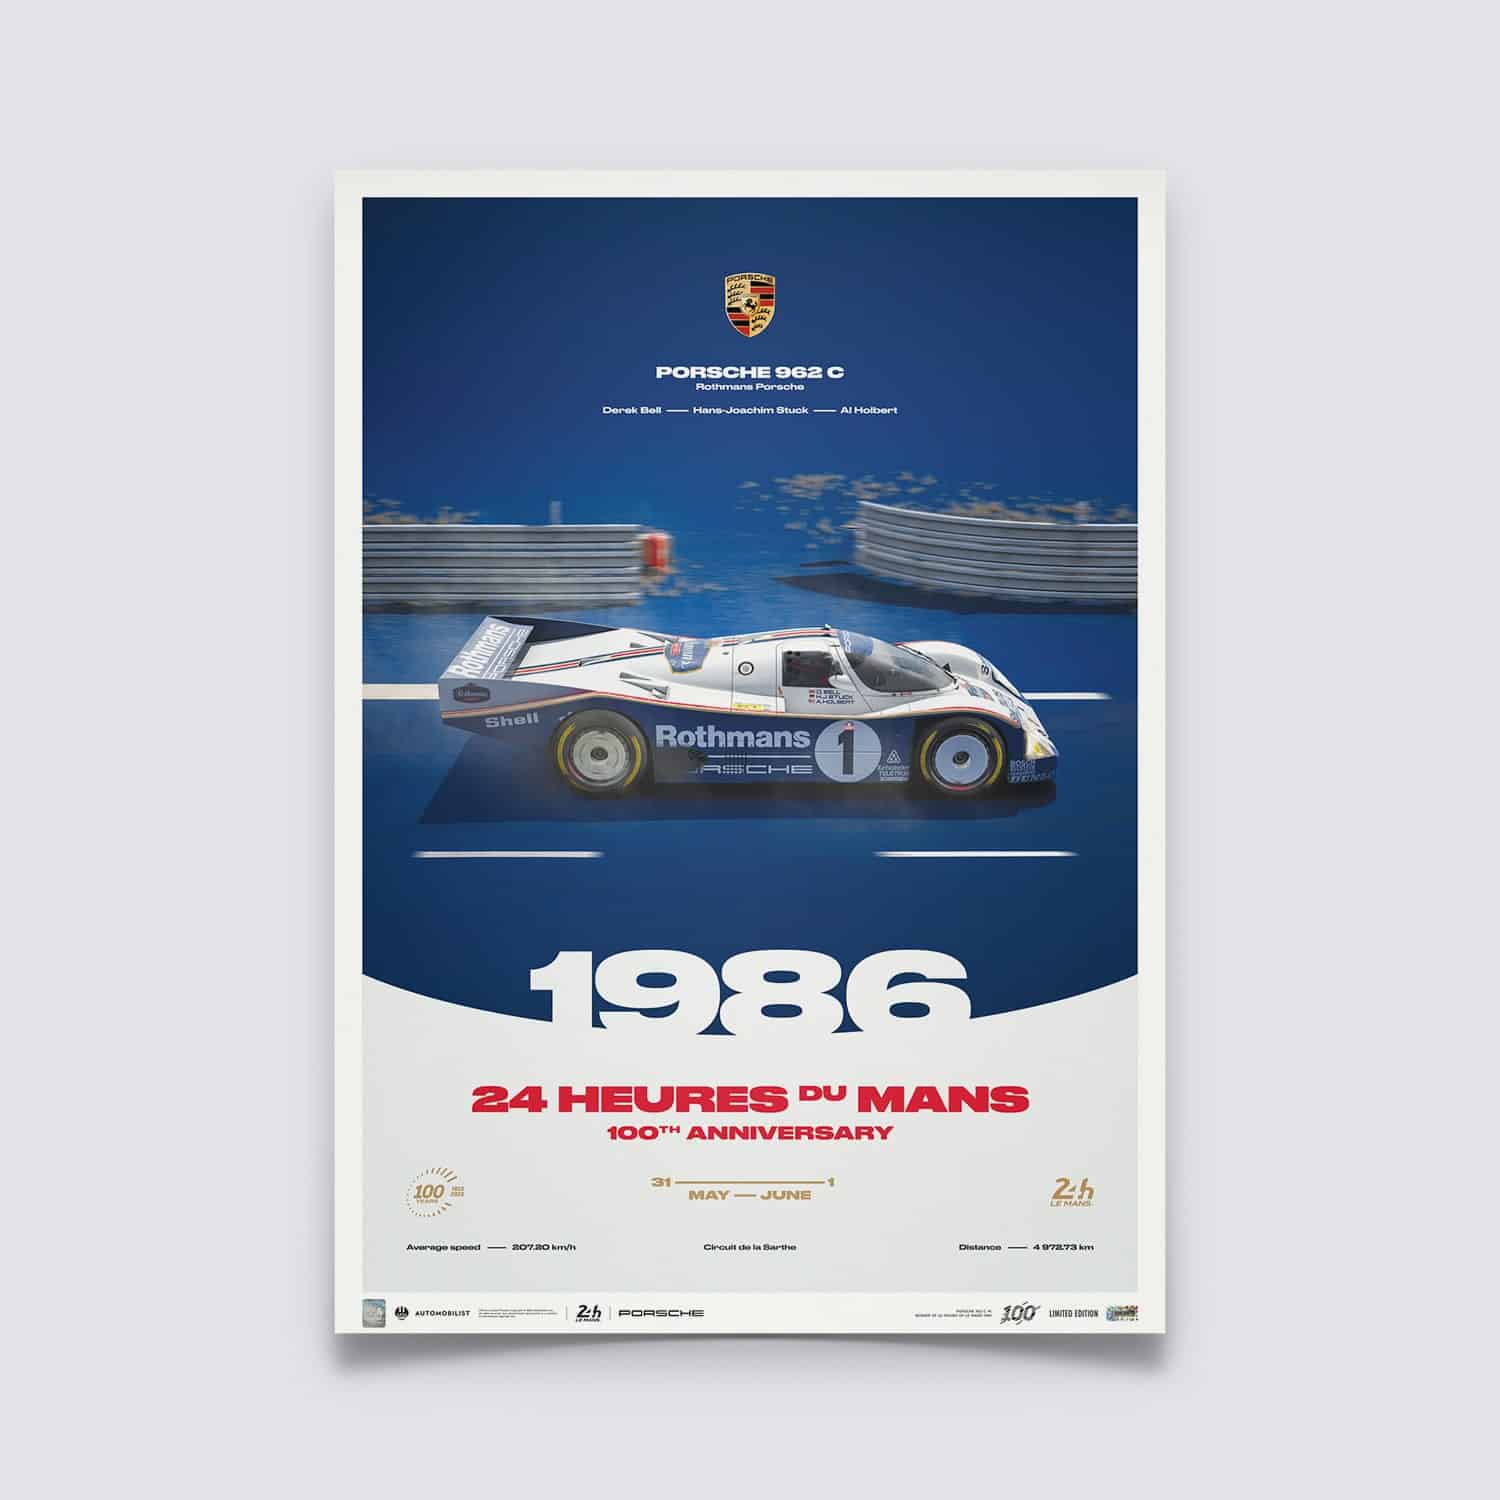 Porsche 962 C, 24H Le Mans